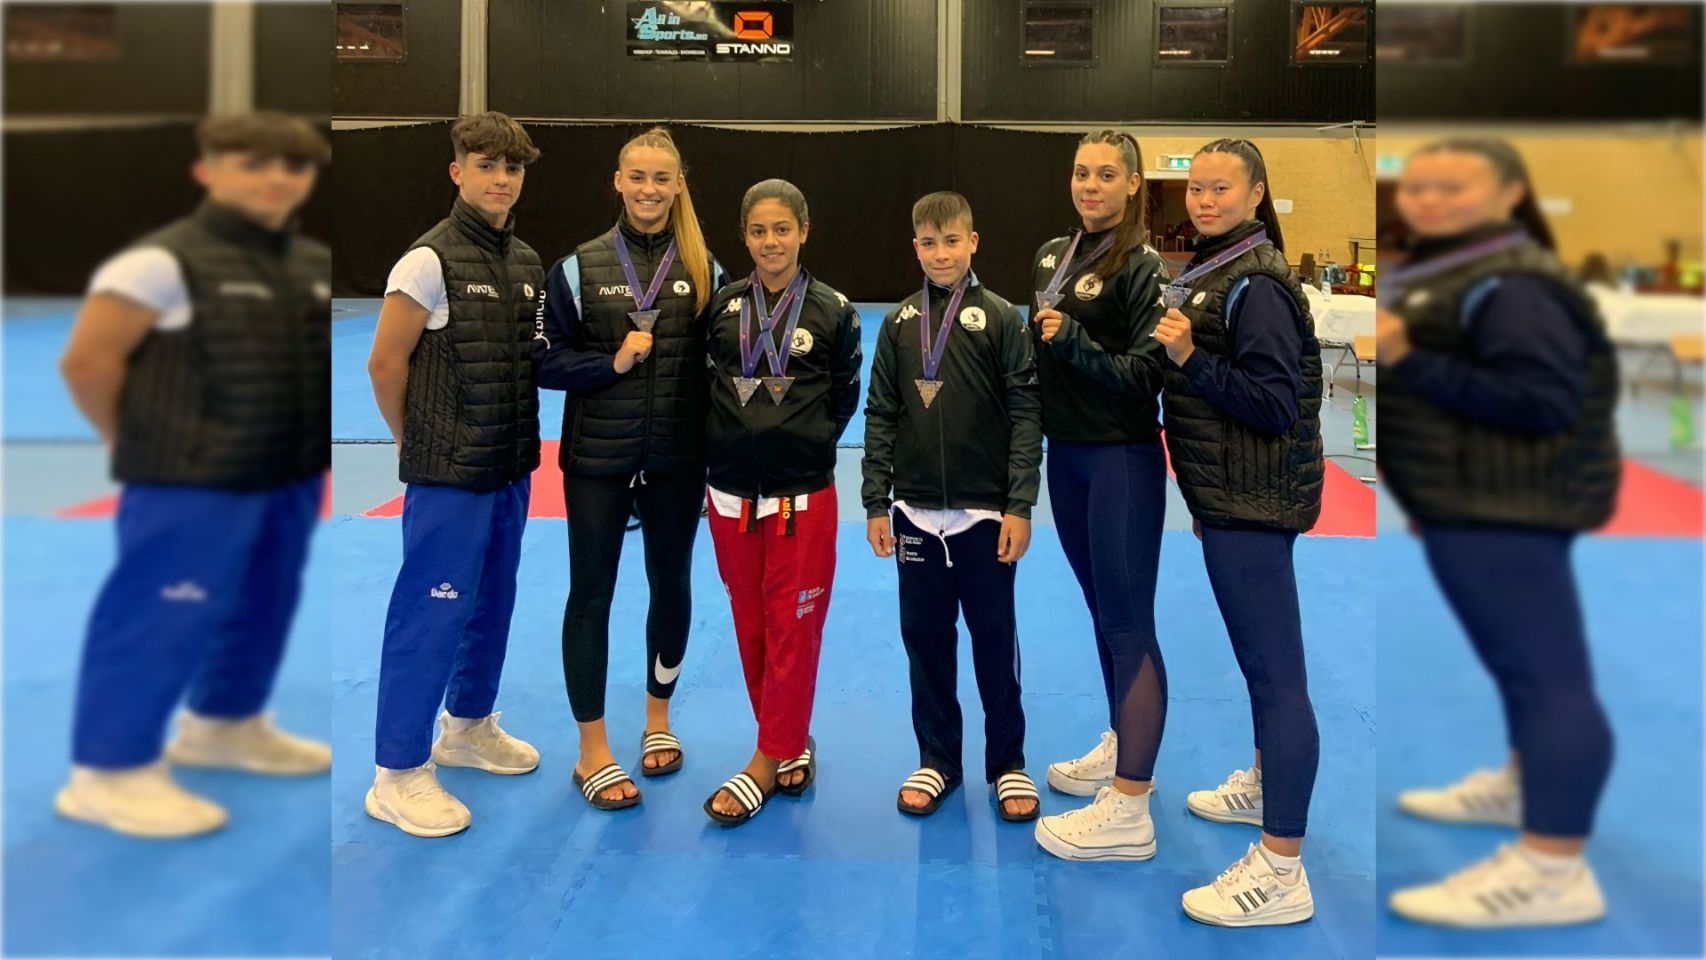 Representantes del Club Taekwondo Sada en la Copa de Europa.